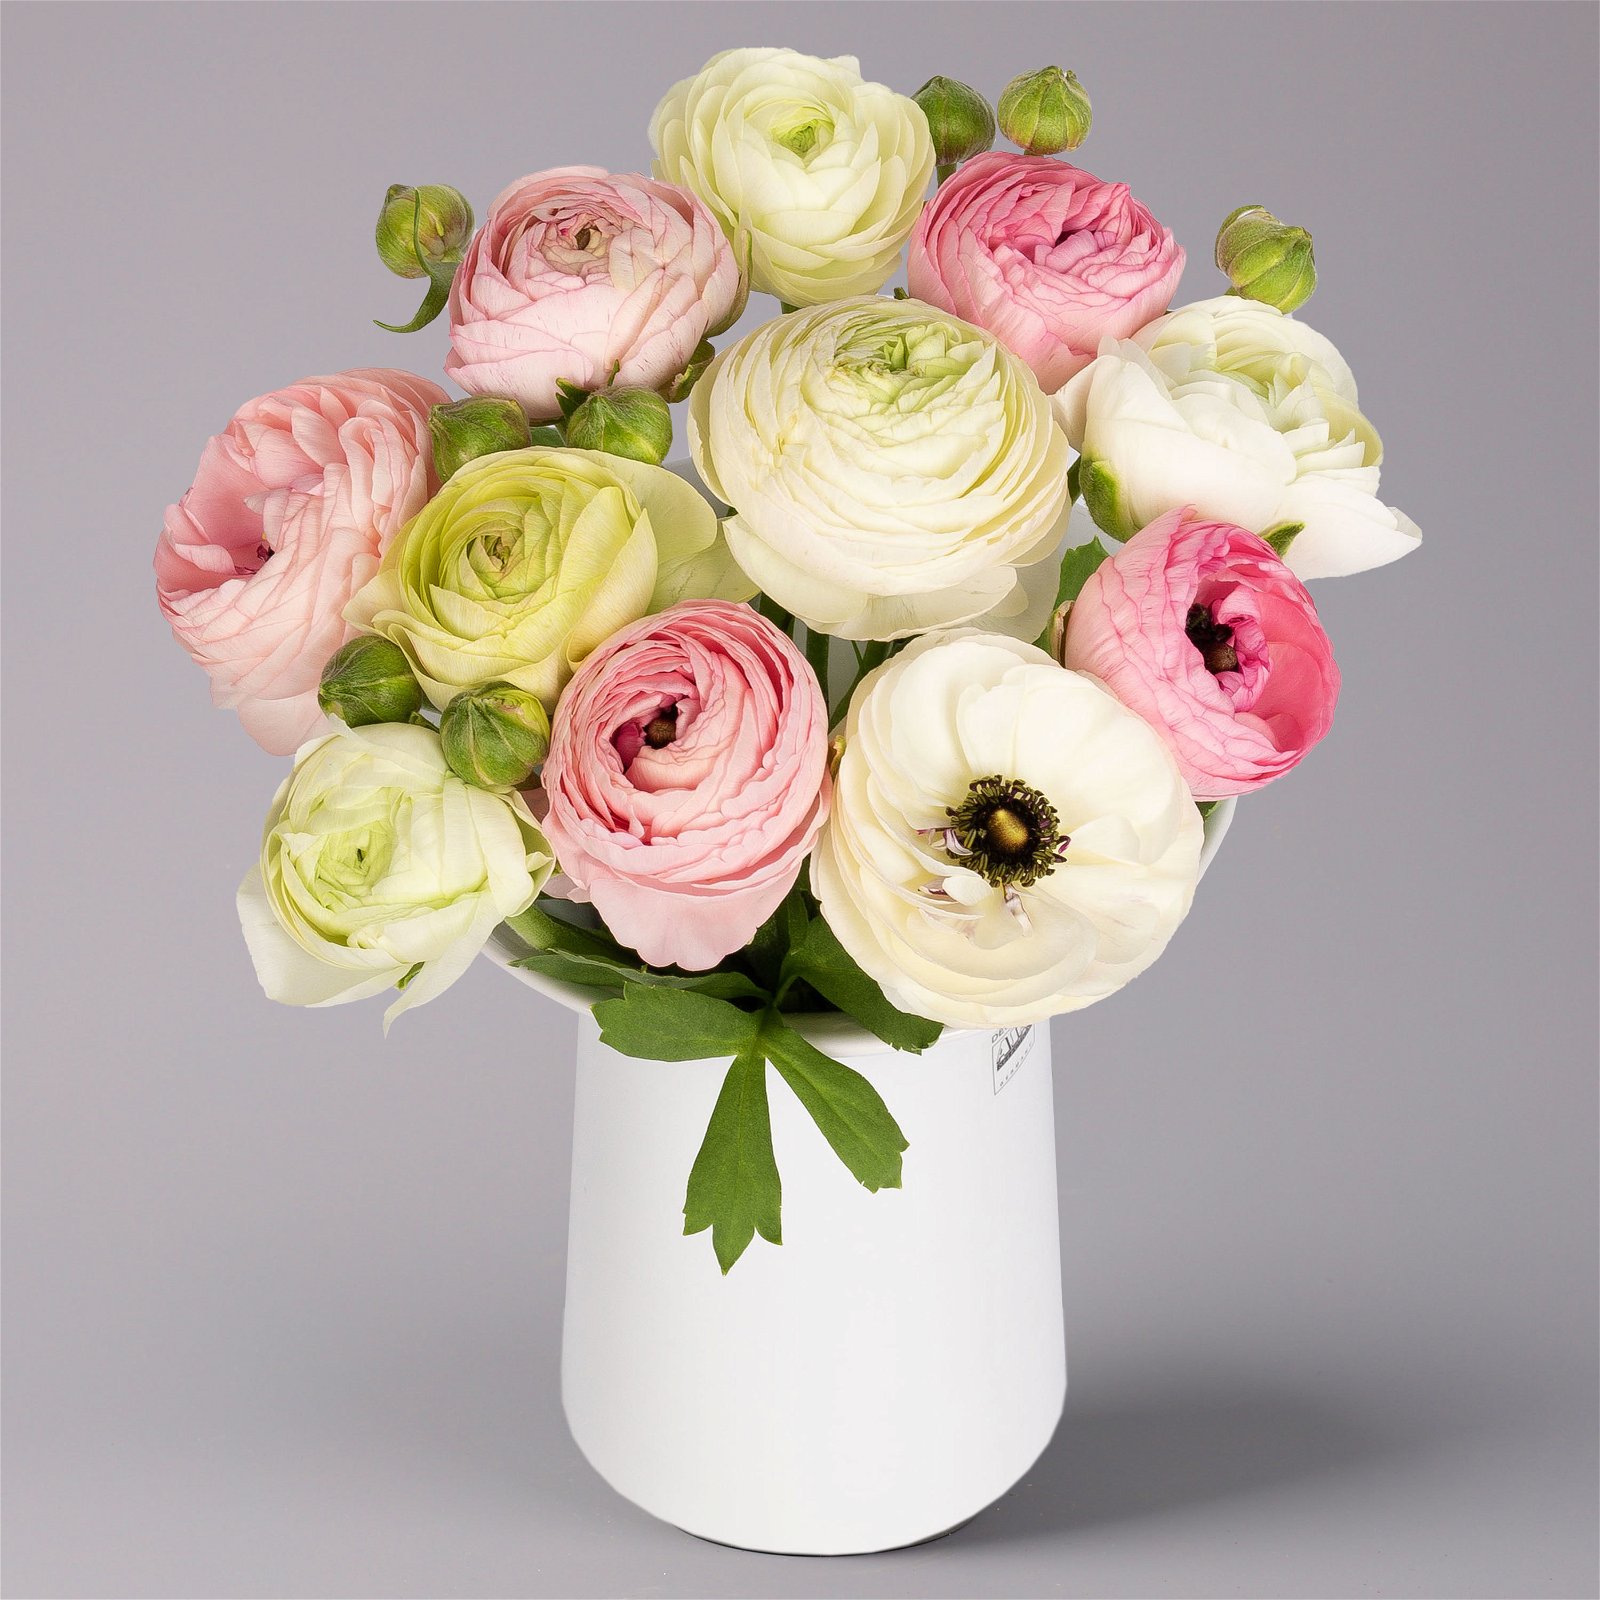 Blumenbund mit Ranunkeln, 10er-Bund, rosa & weiß, inkl. gratis Grußkarte